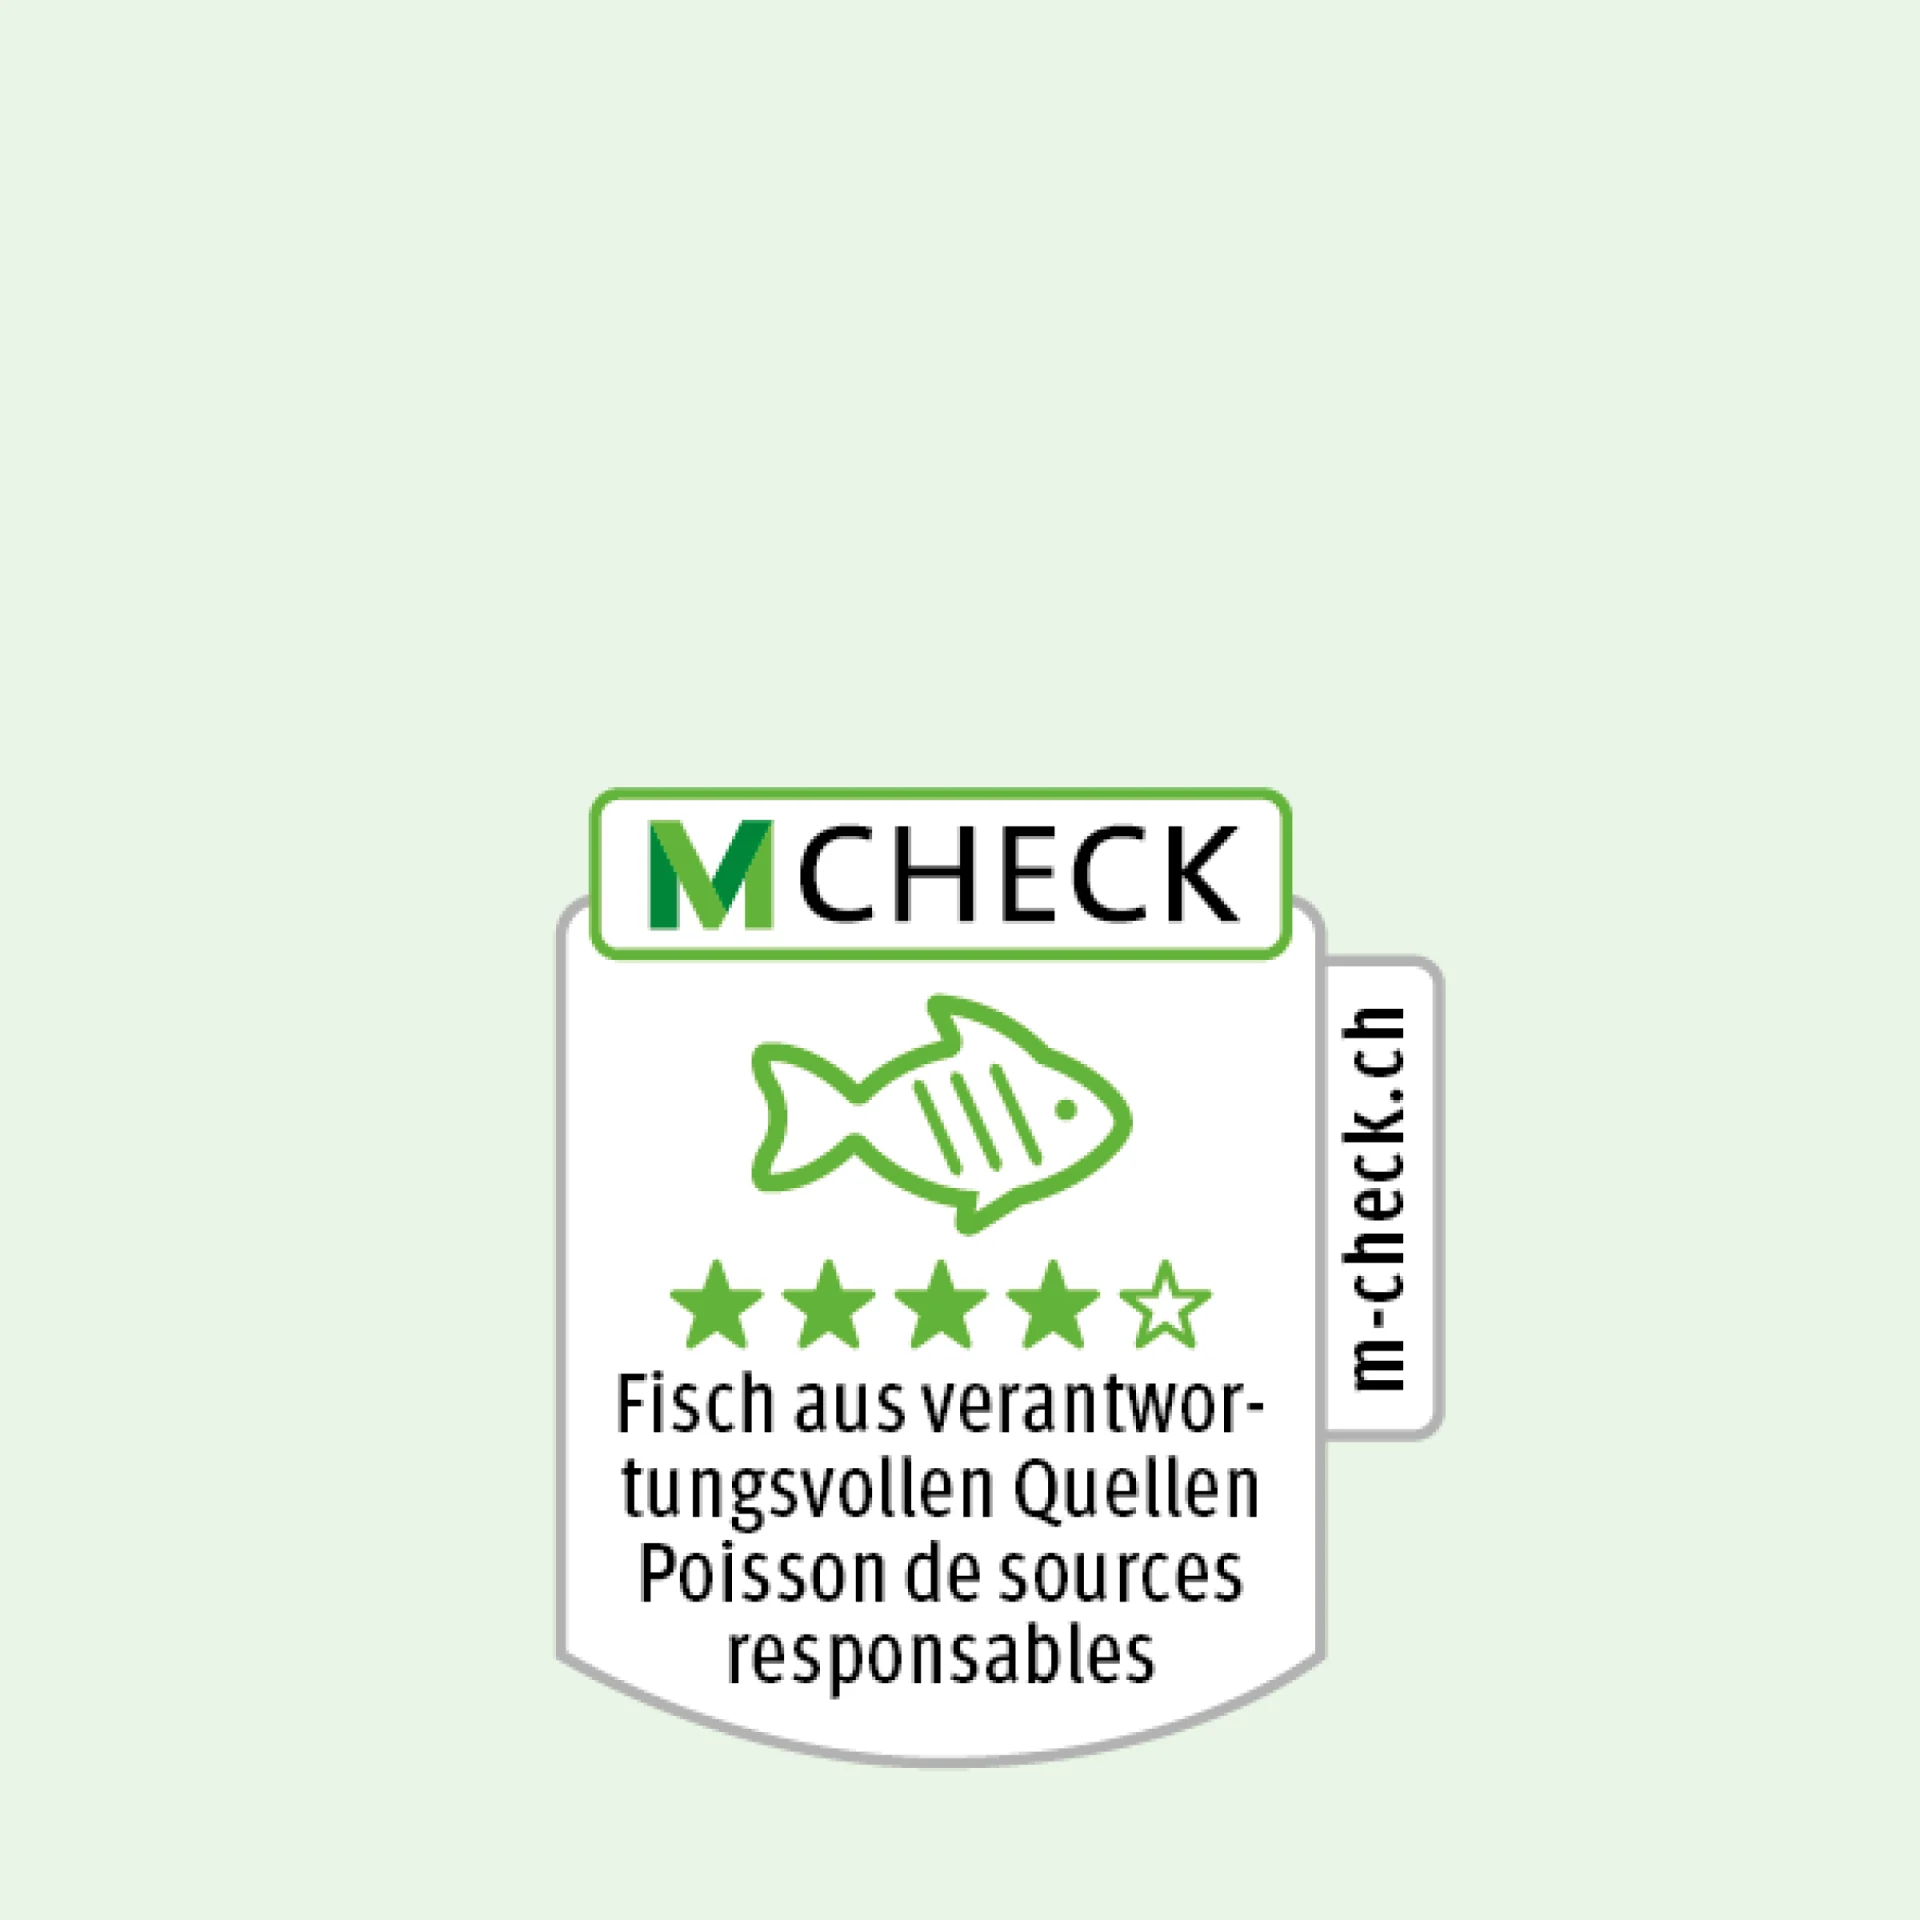 M-Check-Icon mit einem Fisch, darunter vier Sterne für Fisch aus verantwortungsvollen Quellen